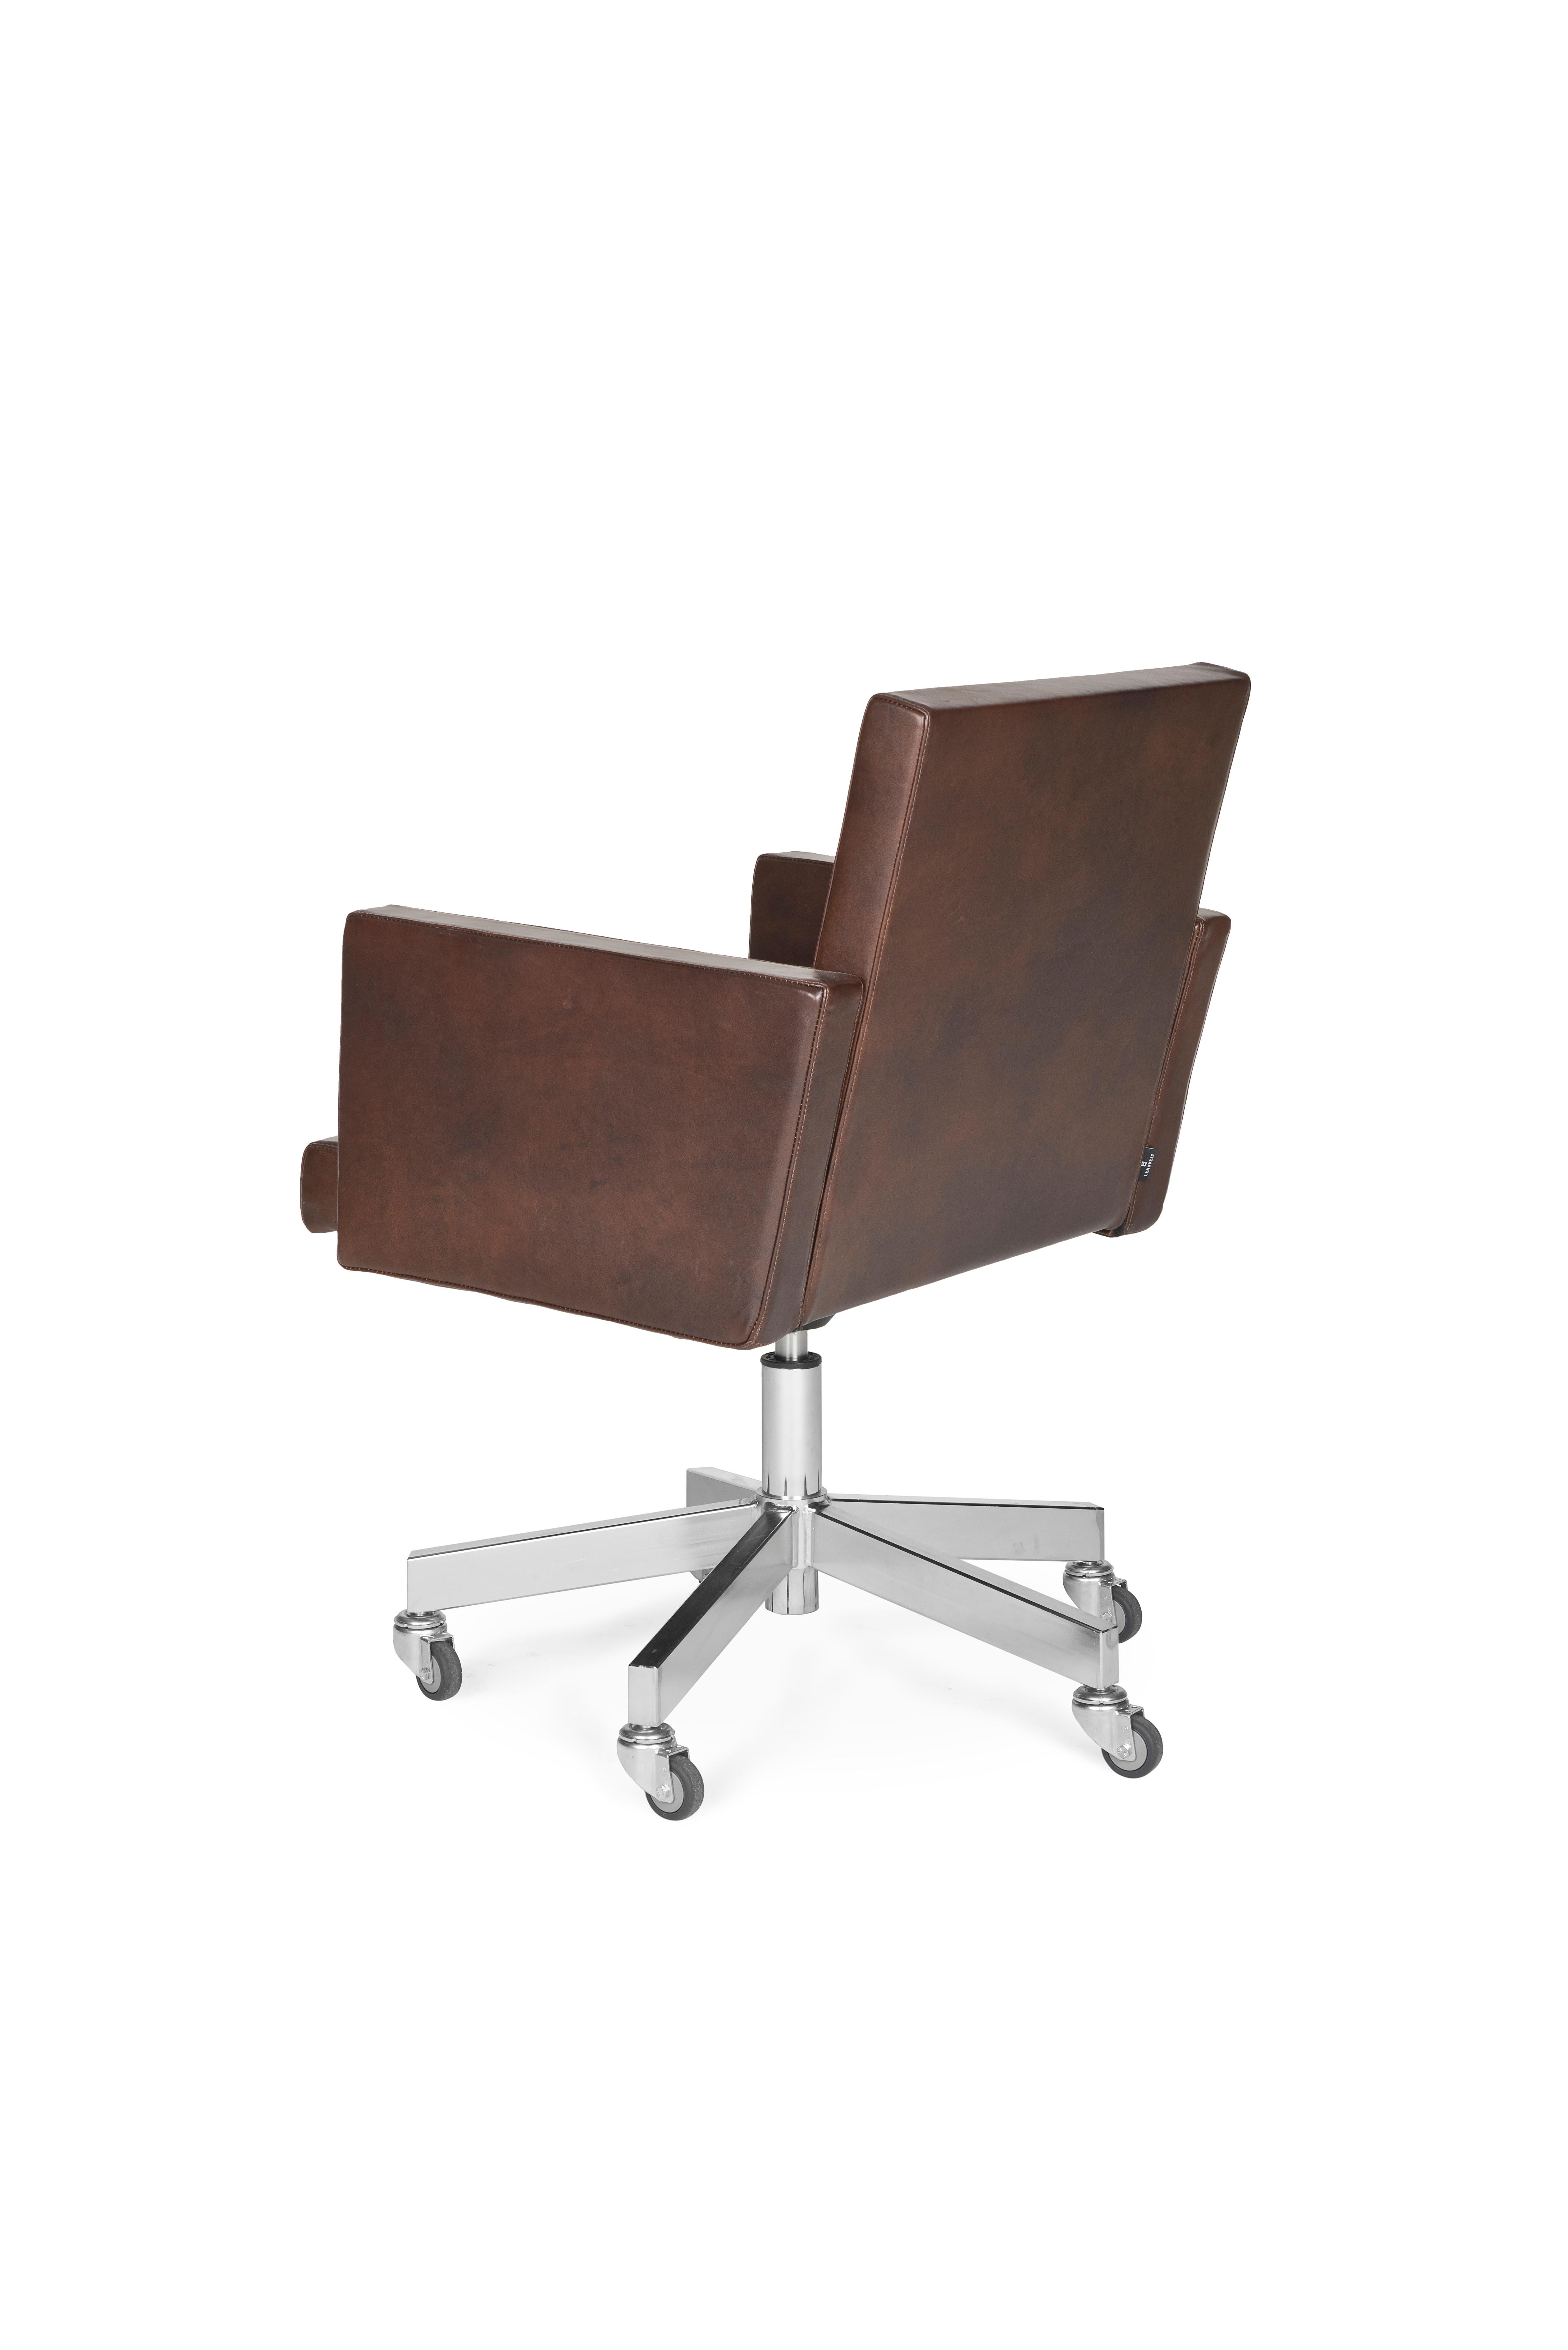 Dutch Lensvelt AVL Office Chair For Sale